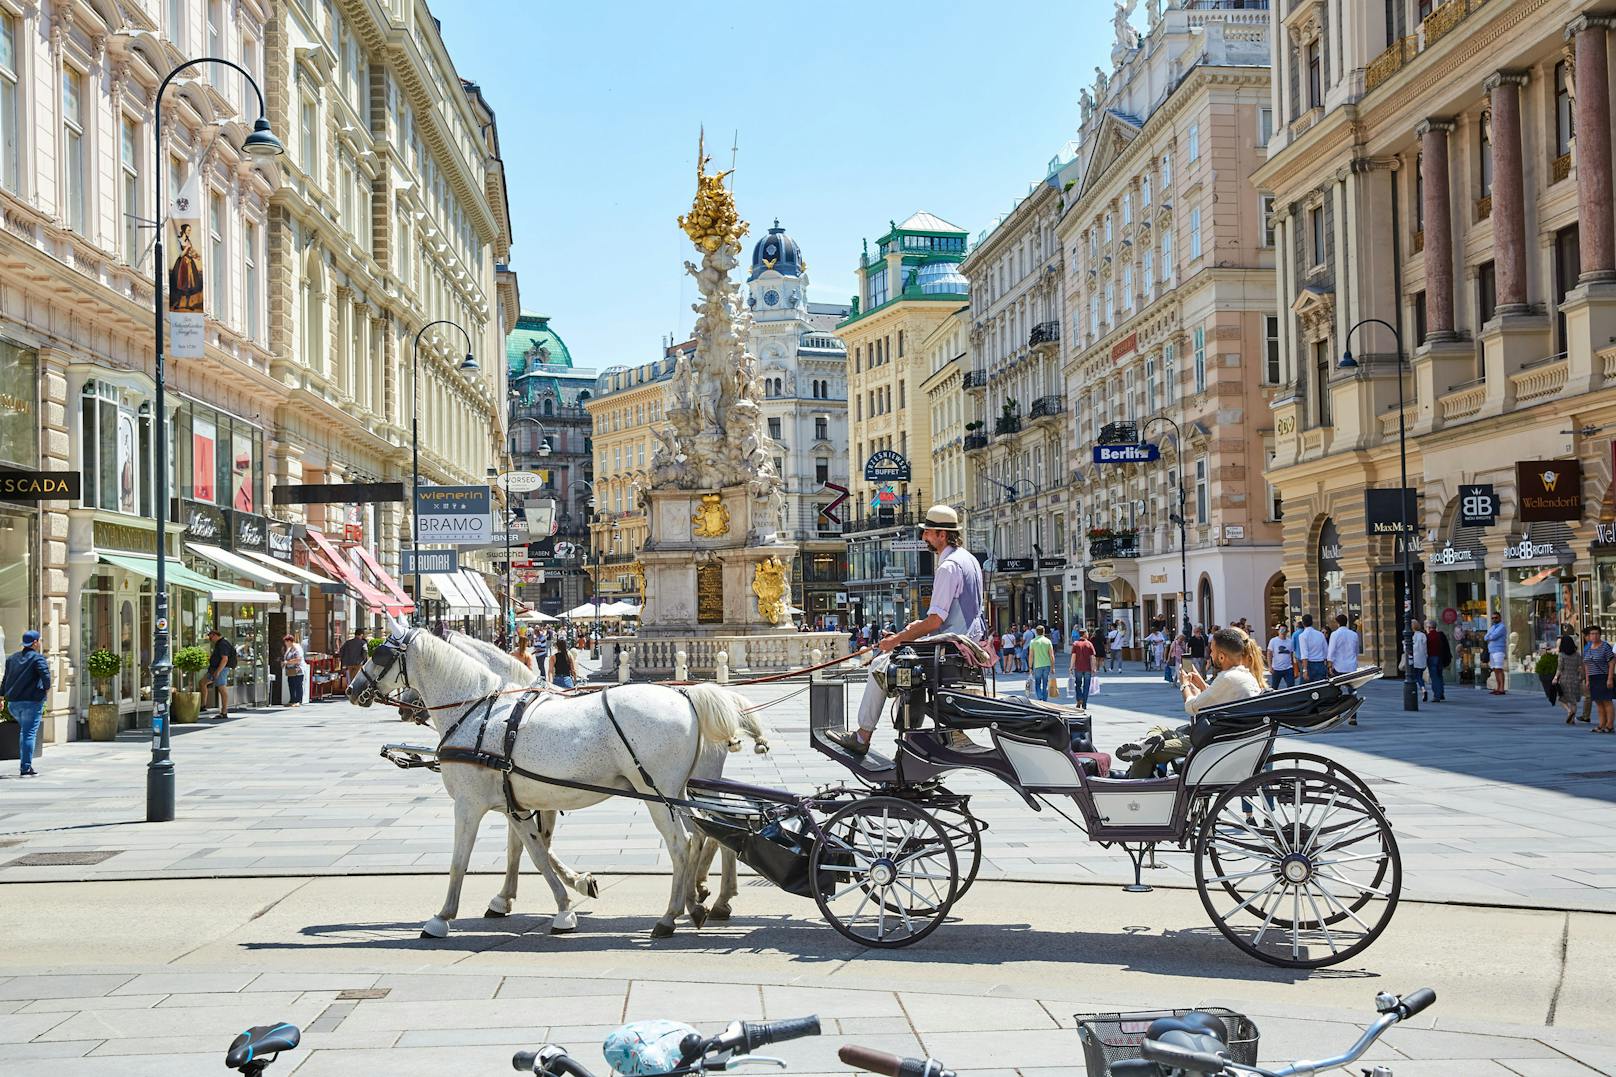 In Wien bekommen Fiaker-Pferde erst ab 35 Grad hitzefrei. Tierschützer wollen die Regelung auf 30 Grad senken, die FPÖ Wien fordert Zelte mit Sprühnebel-Anlagen zur Abkühlung.